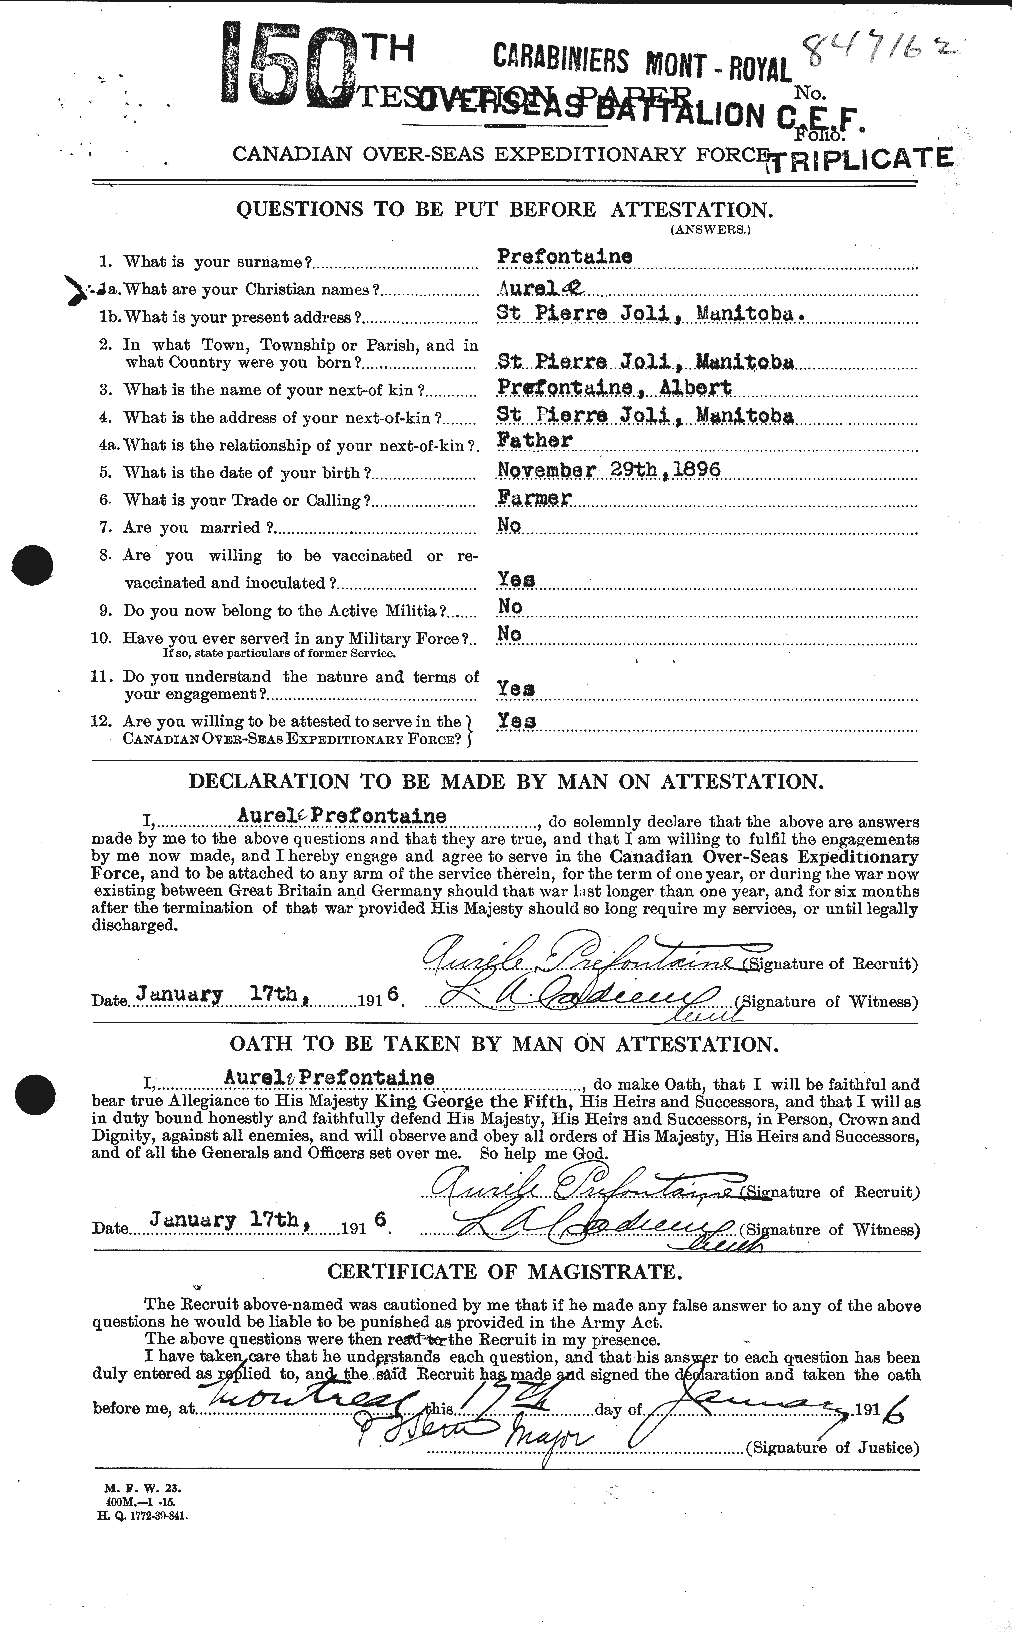 Dossiers du Personnel de la Première Guerre mondiale - CEC 588398a